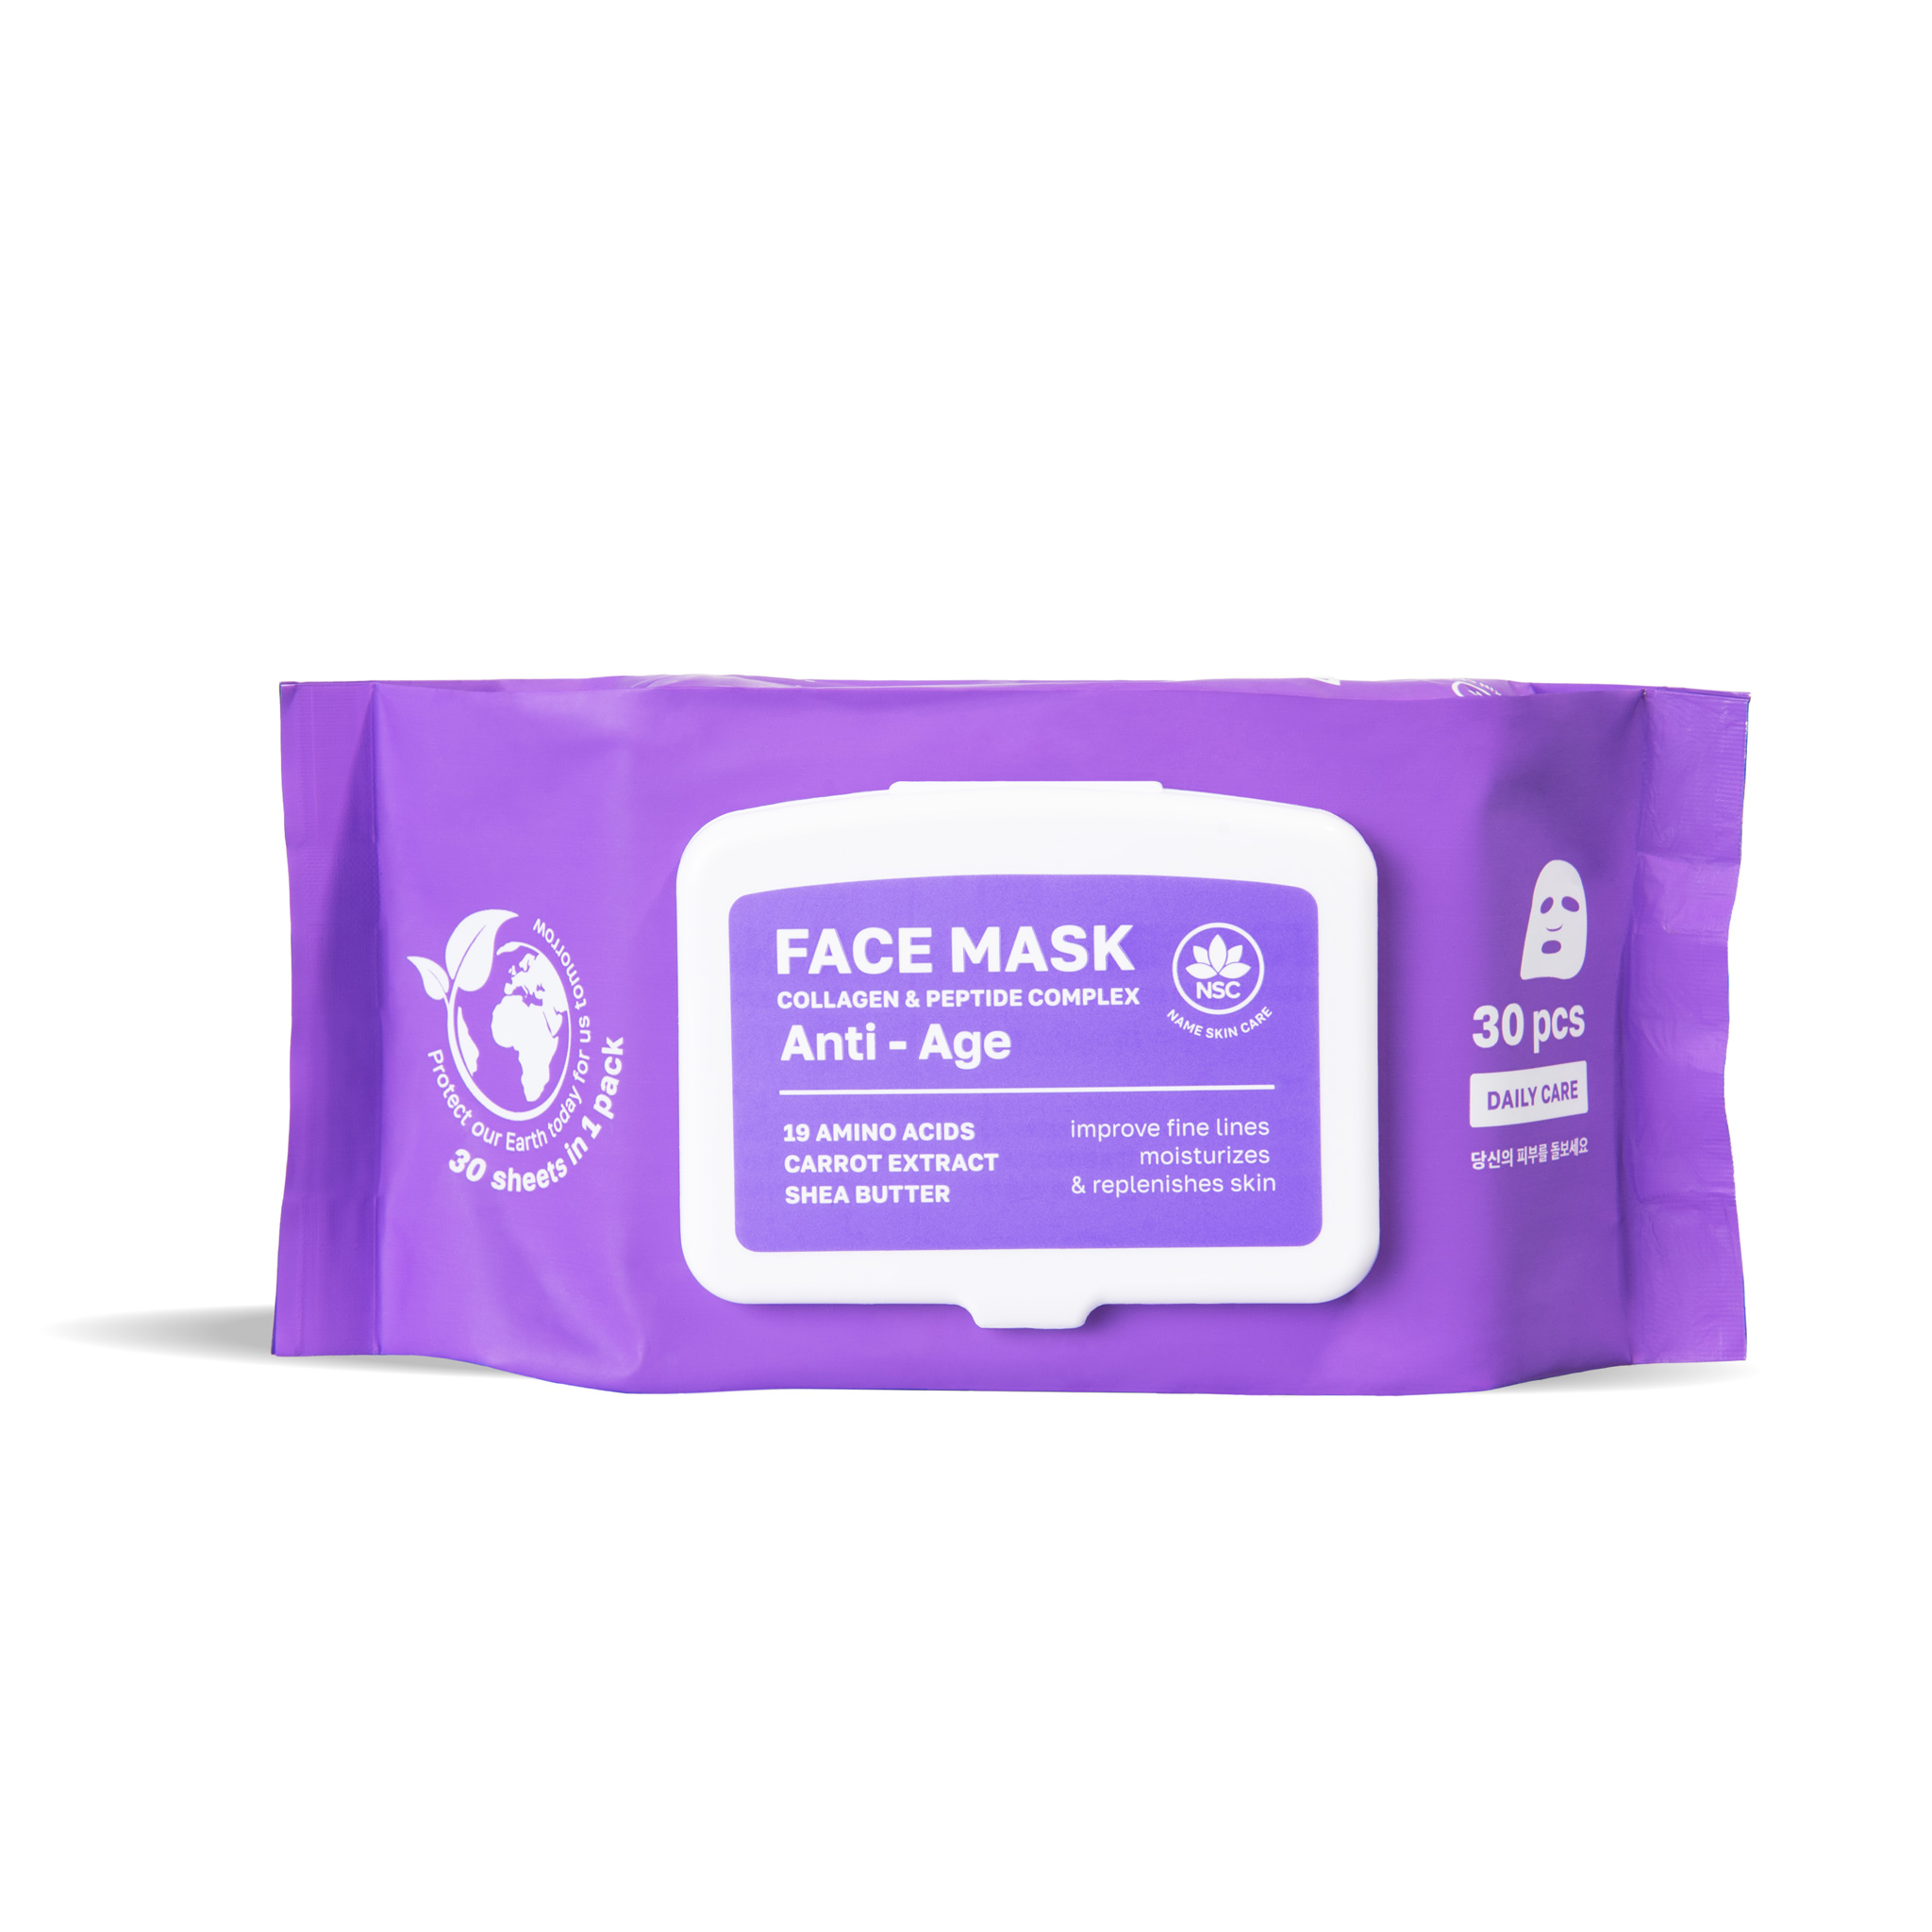 Тканевая маска для лица Name Skin Care с Коллагеном и Пептидами, 30 шт питательный флюид с усиленным лифтинговым действием для лица и декольте с пептидами и сверциамарином